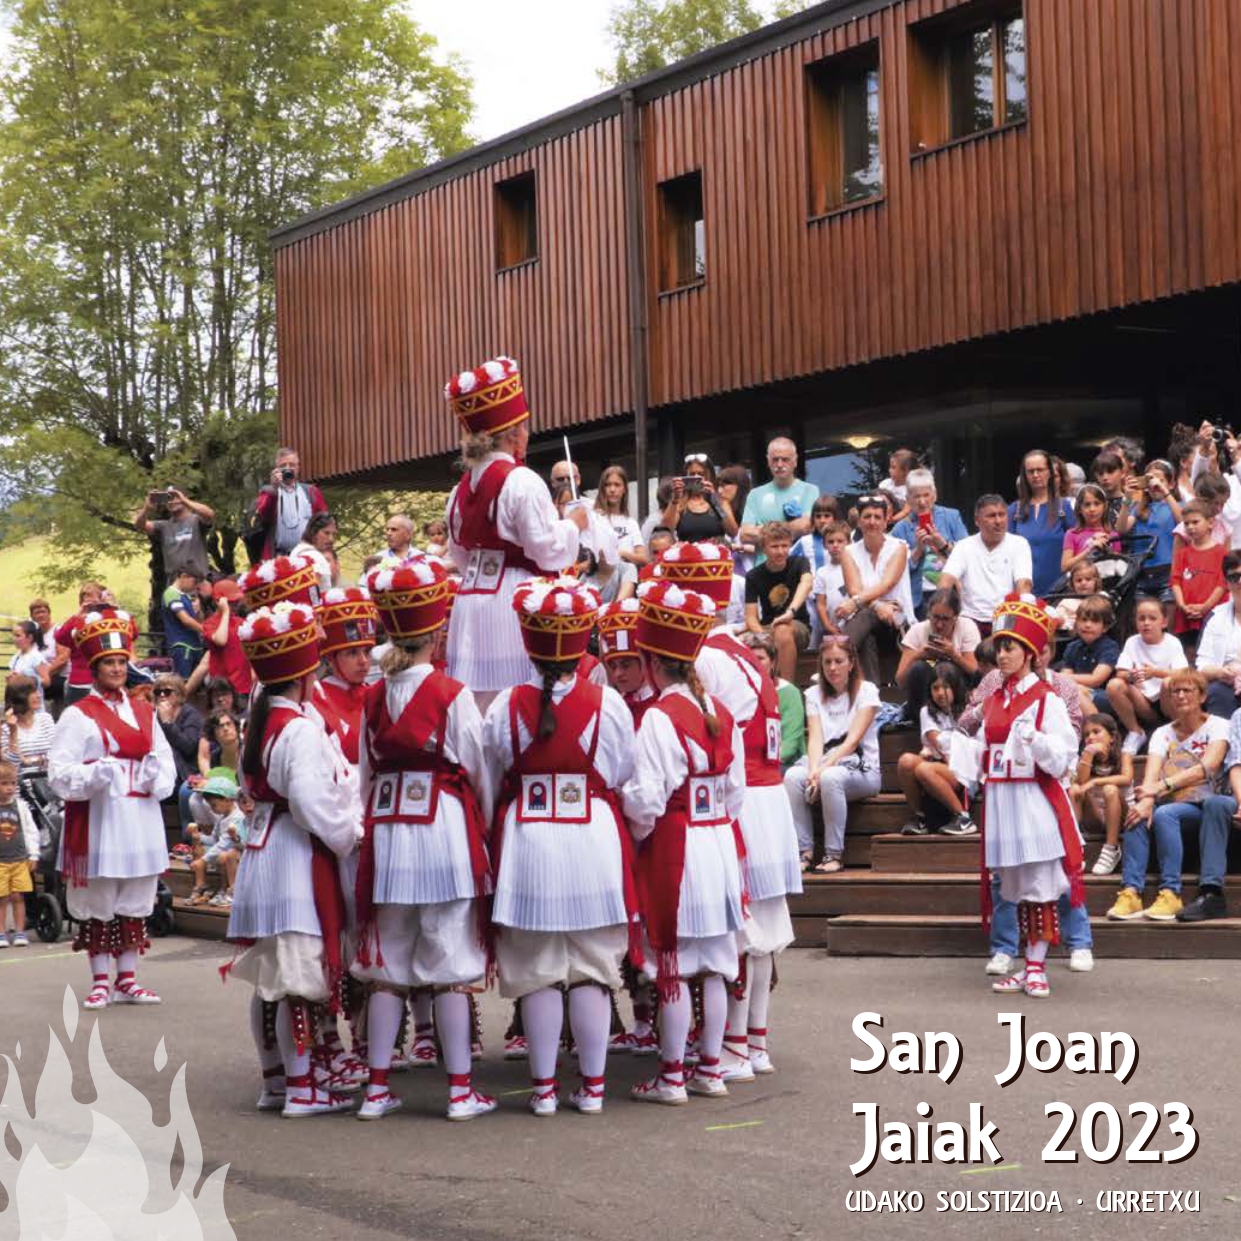 San Joan jaiak 2023